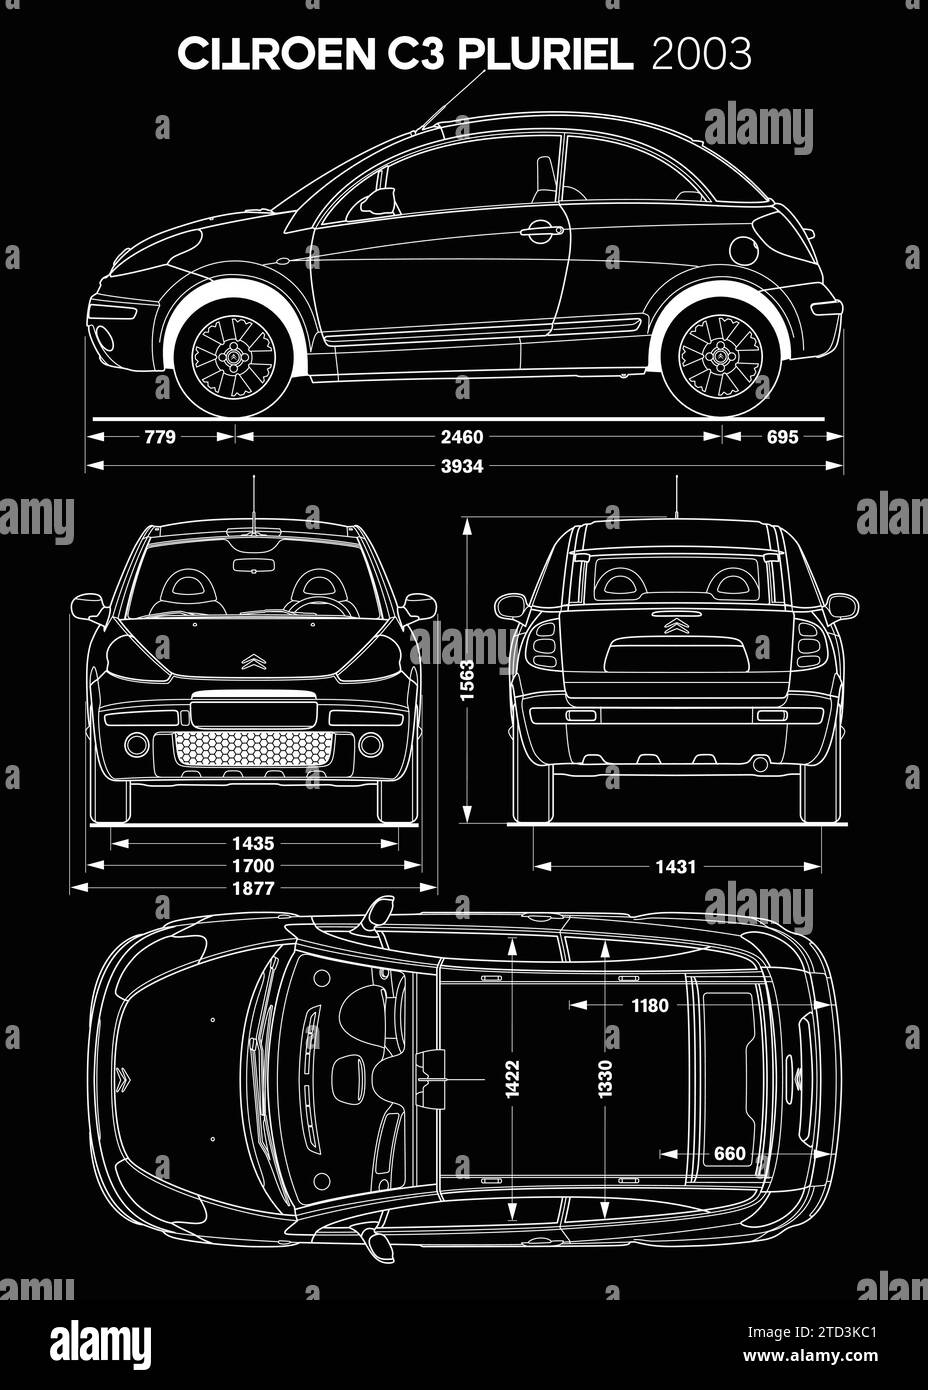 Modèle de voiture Citroen C3 pluriel 2003 Illustration de Vecteur